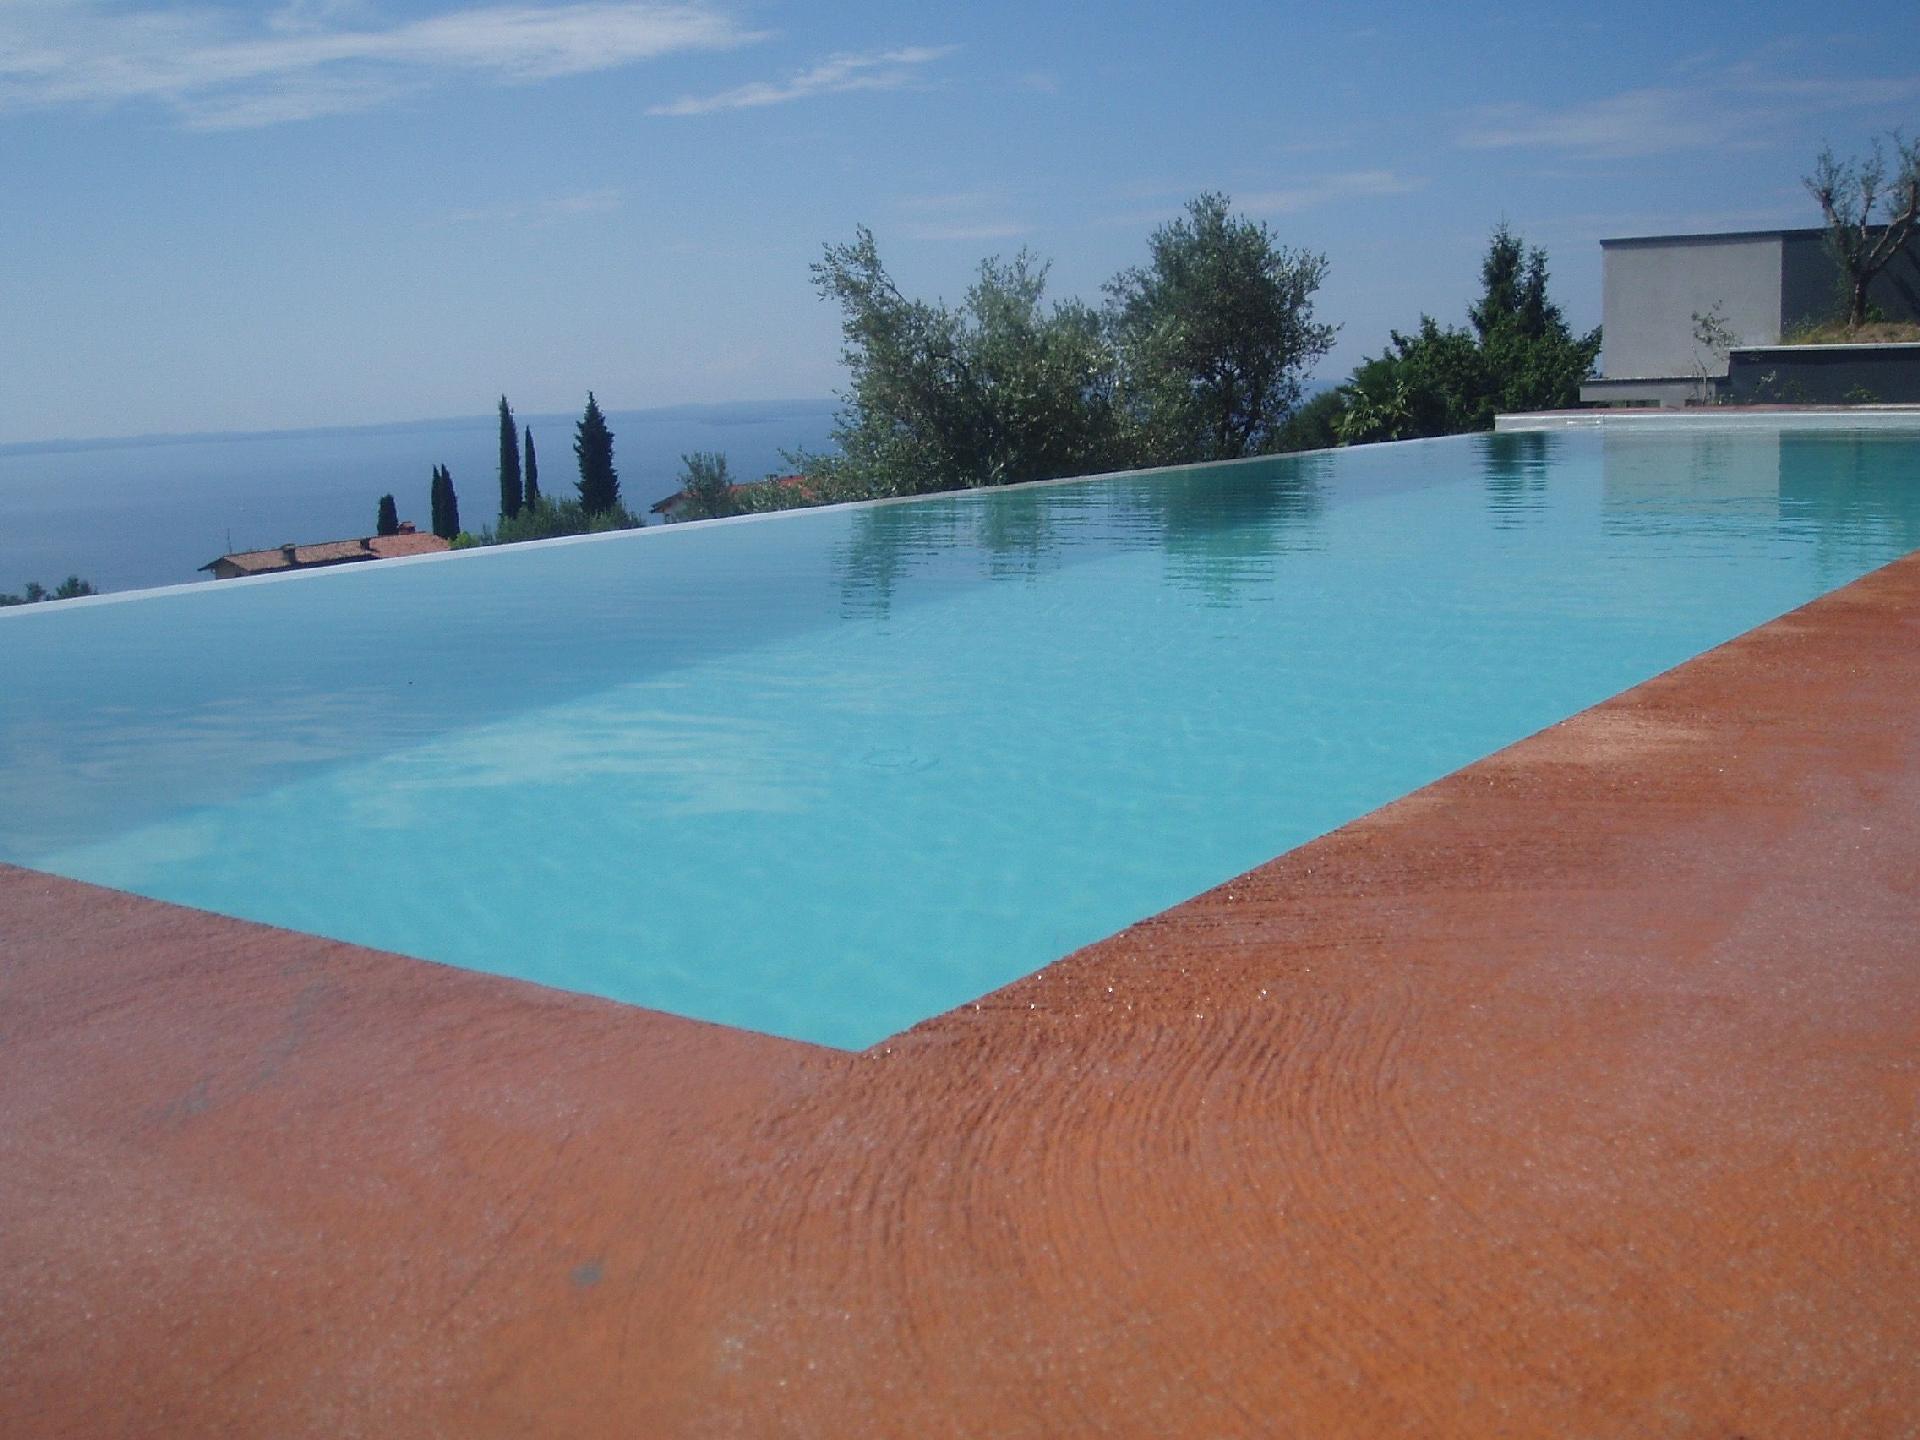 Ferienwohnung mit Pool und Blick auf den See Ferienhaus in Italien